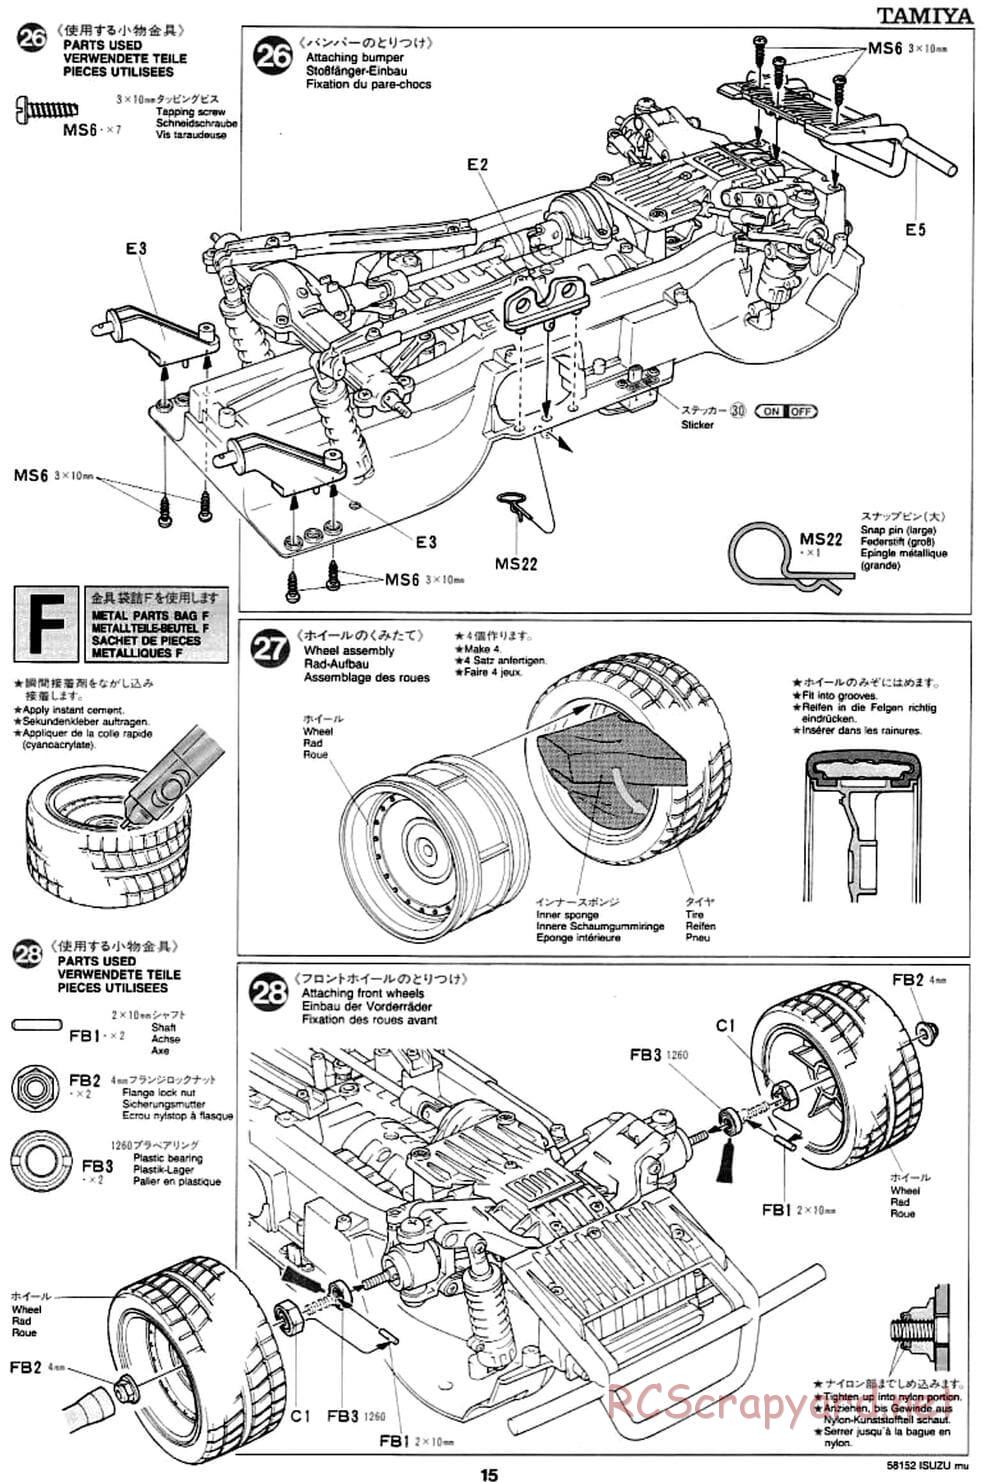 Tamiya - Isuzu Mu - CC-01 Chassis - Manual - Page 15